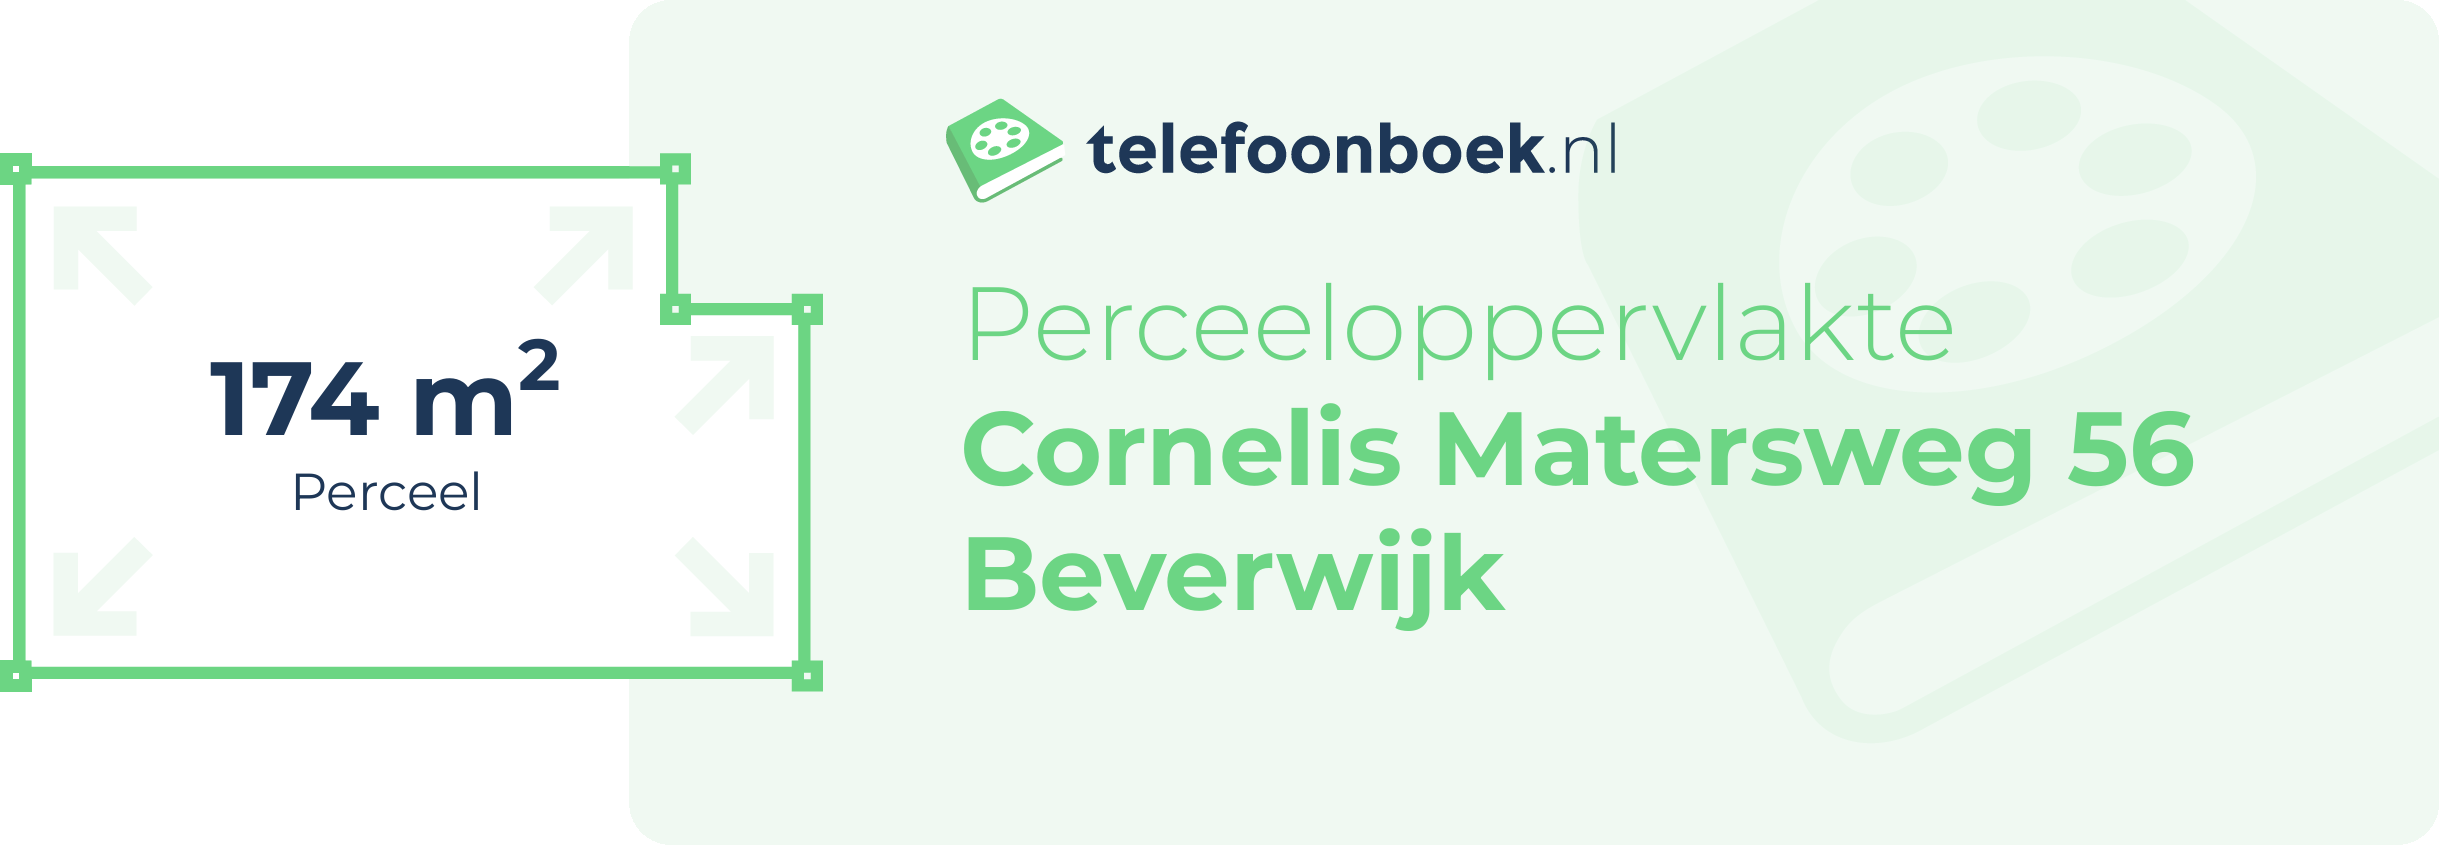 Perceeloppervlakte Cornelis Matersweg 56 Beverwijk